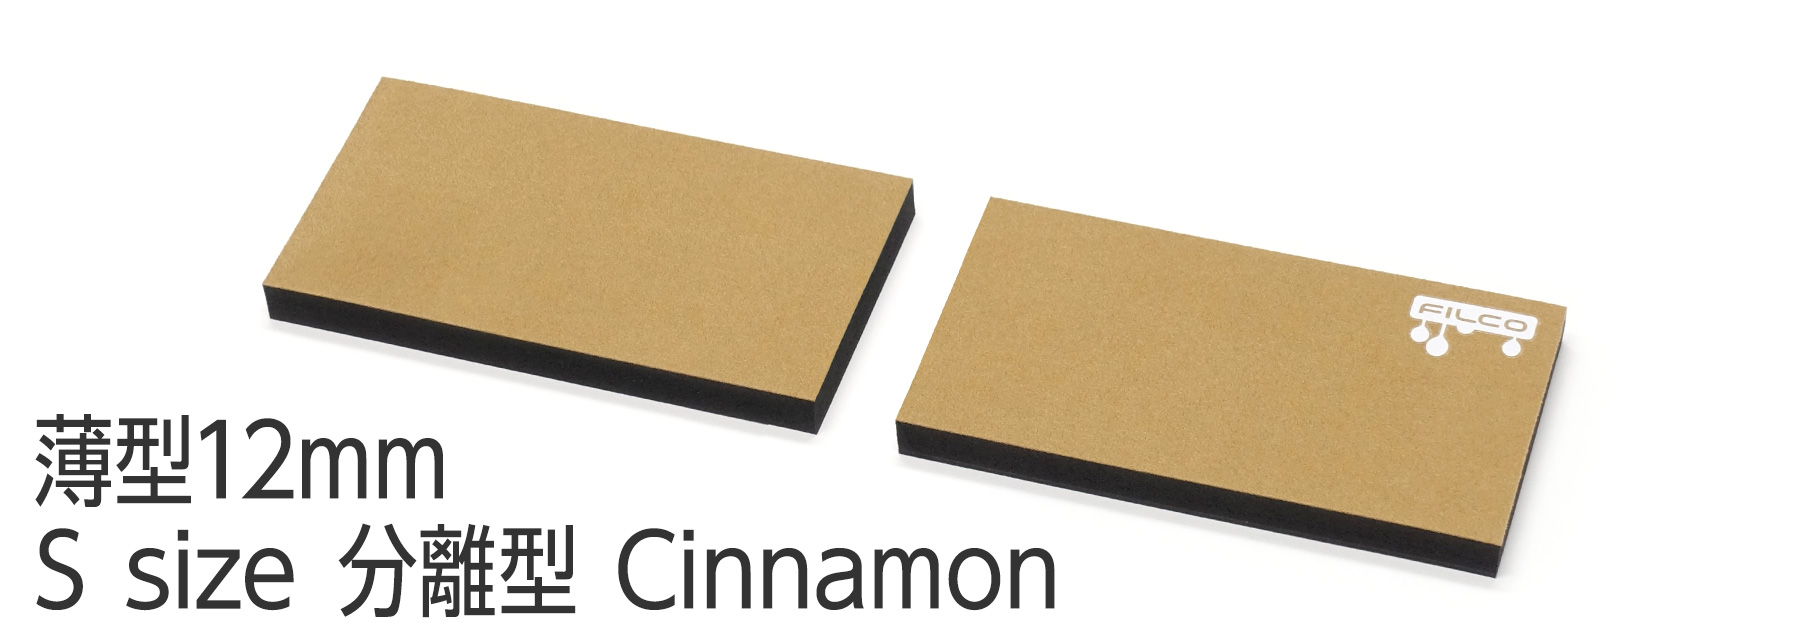 FILCO Majestouch Wrist Rest "Macaron" 薄型12mm・Ｓサイズ・分離型(2分割)・Cinnamon